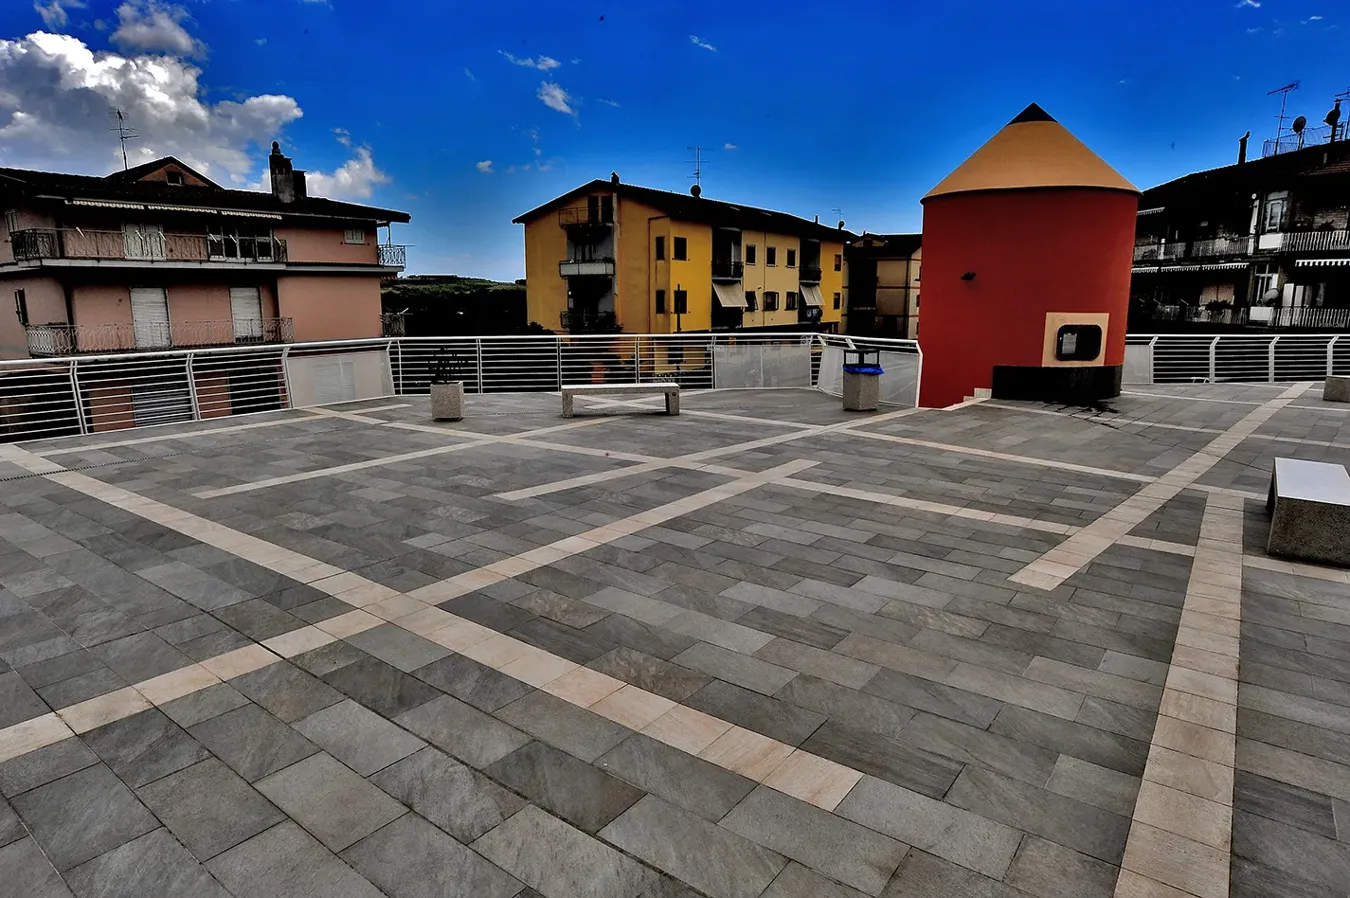 Piazza Campigliano rinnovata con vari formati di piastrelle della collezione Point, mostrando un design accattivante e moderno che valorizza lo spazio urbano circostante.